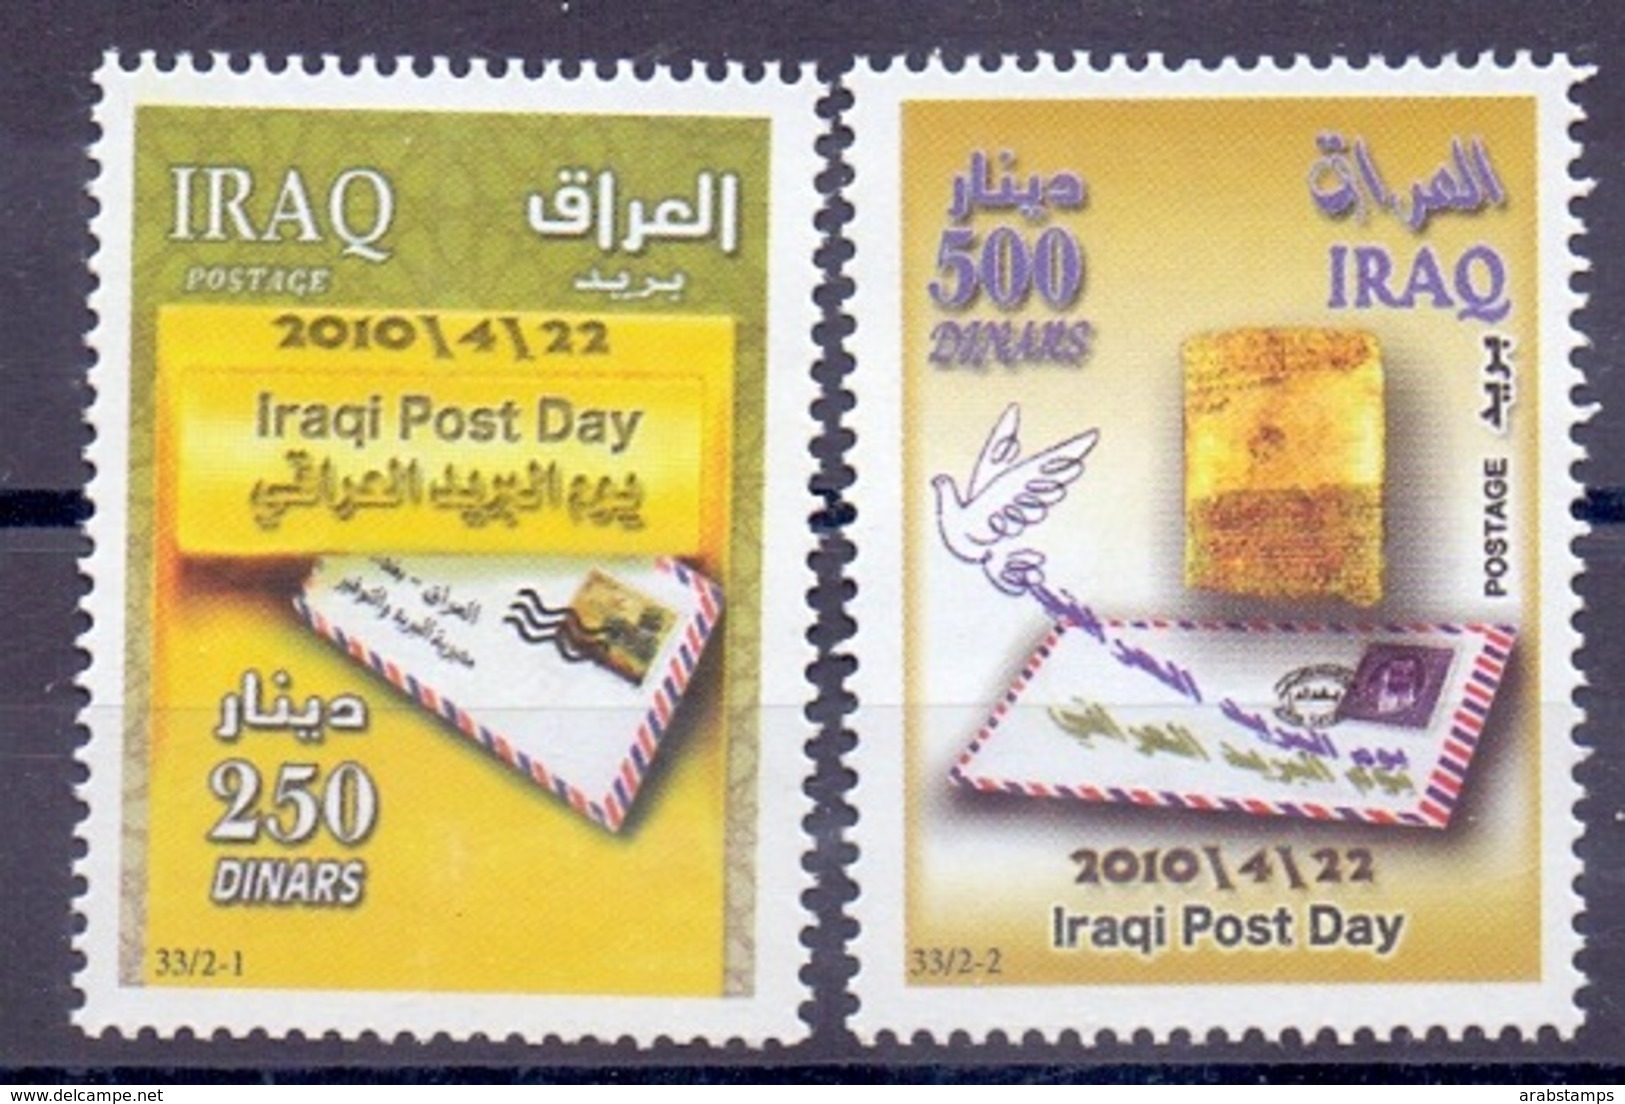 2010 IRAQ Complete Set 2 Values MNH S.G.No.2286-2287 - Iraq